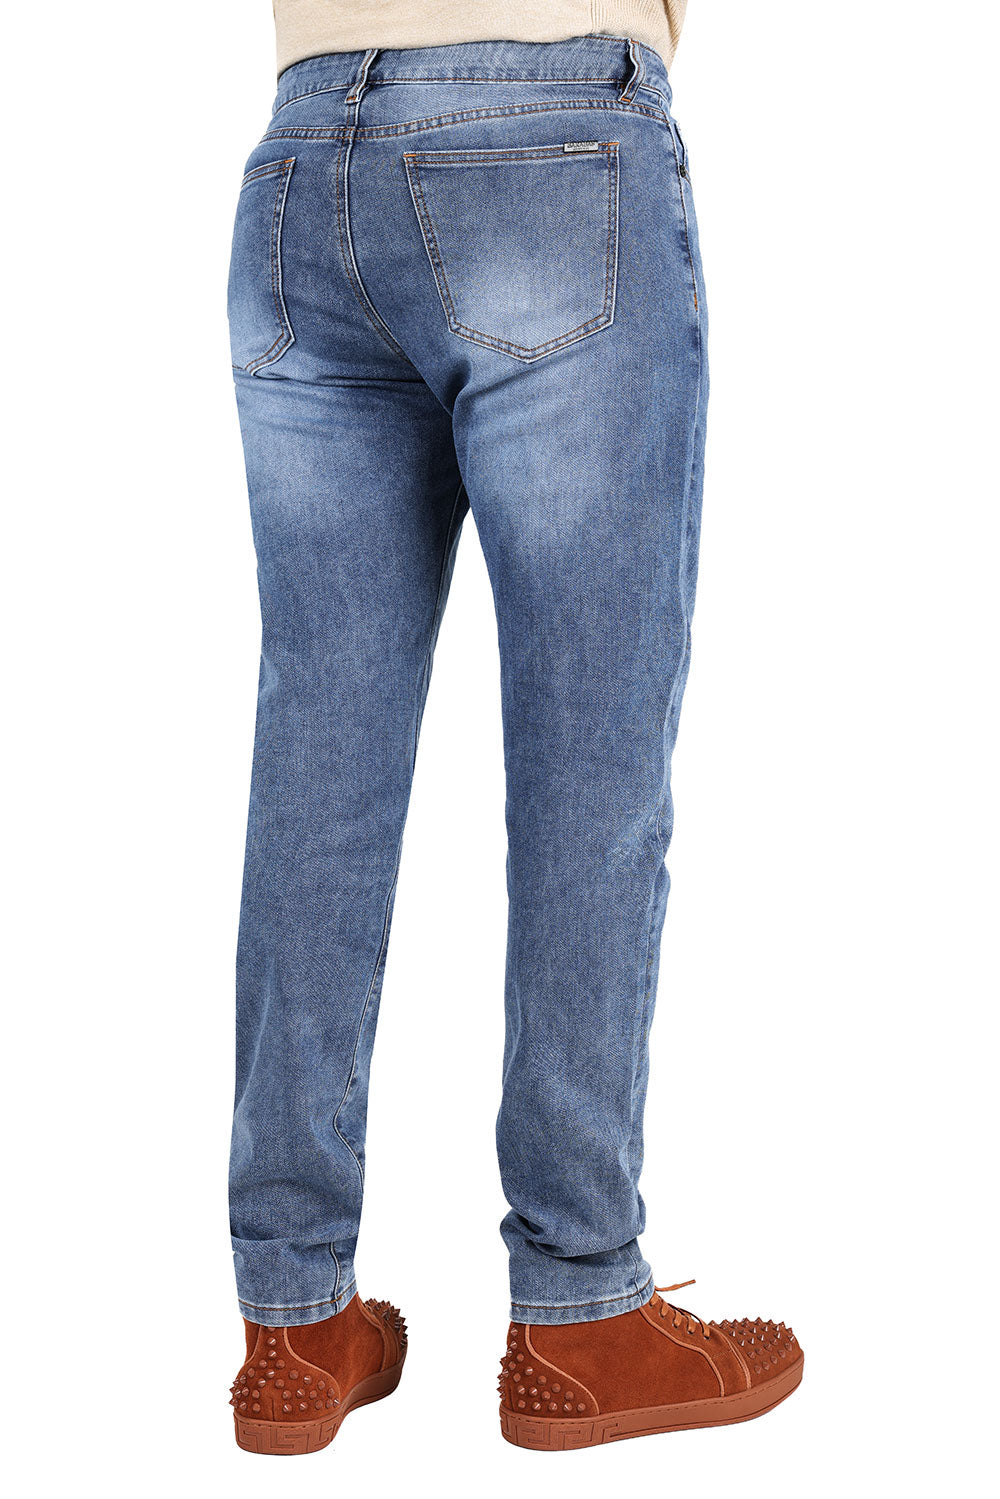 Barabas Men's Light Blue Washed Premium Denim Jeans 2JE08SL